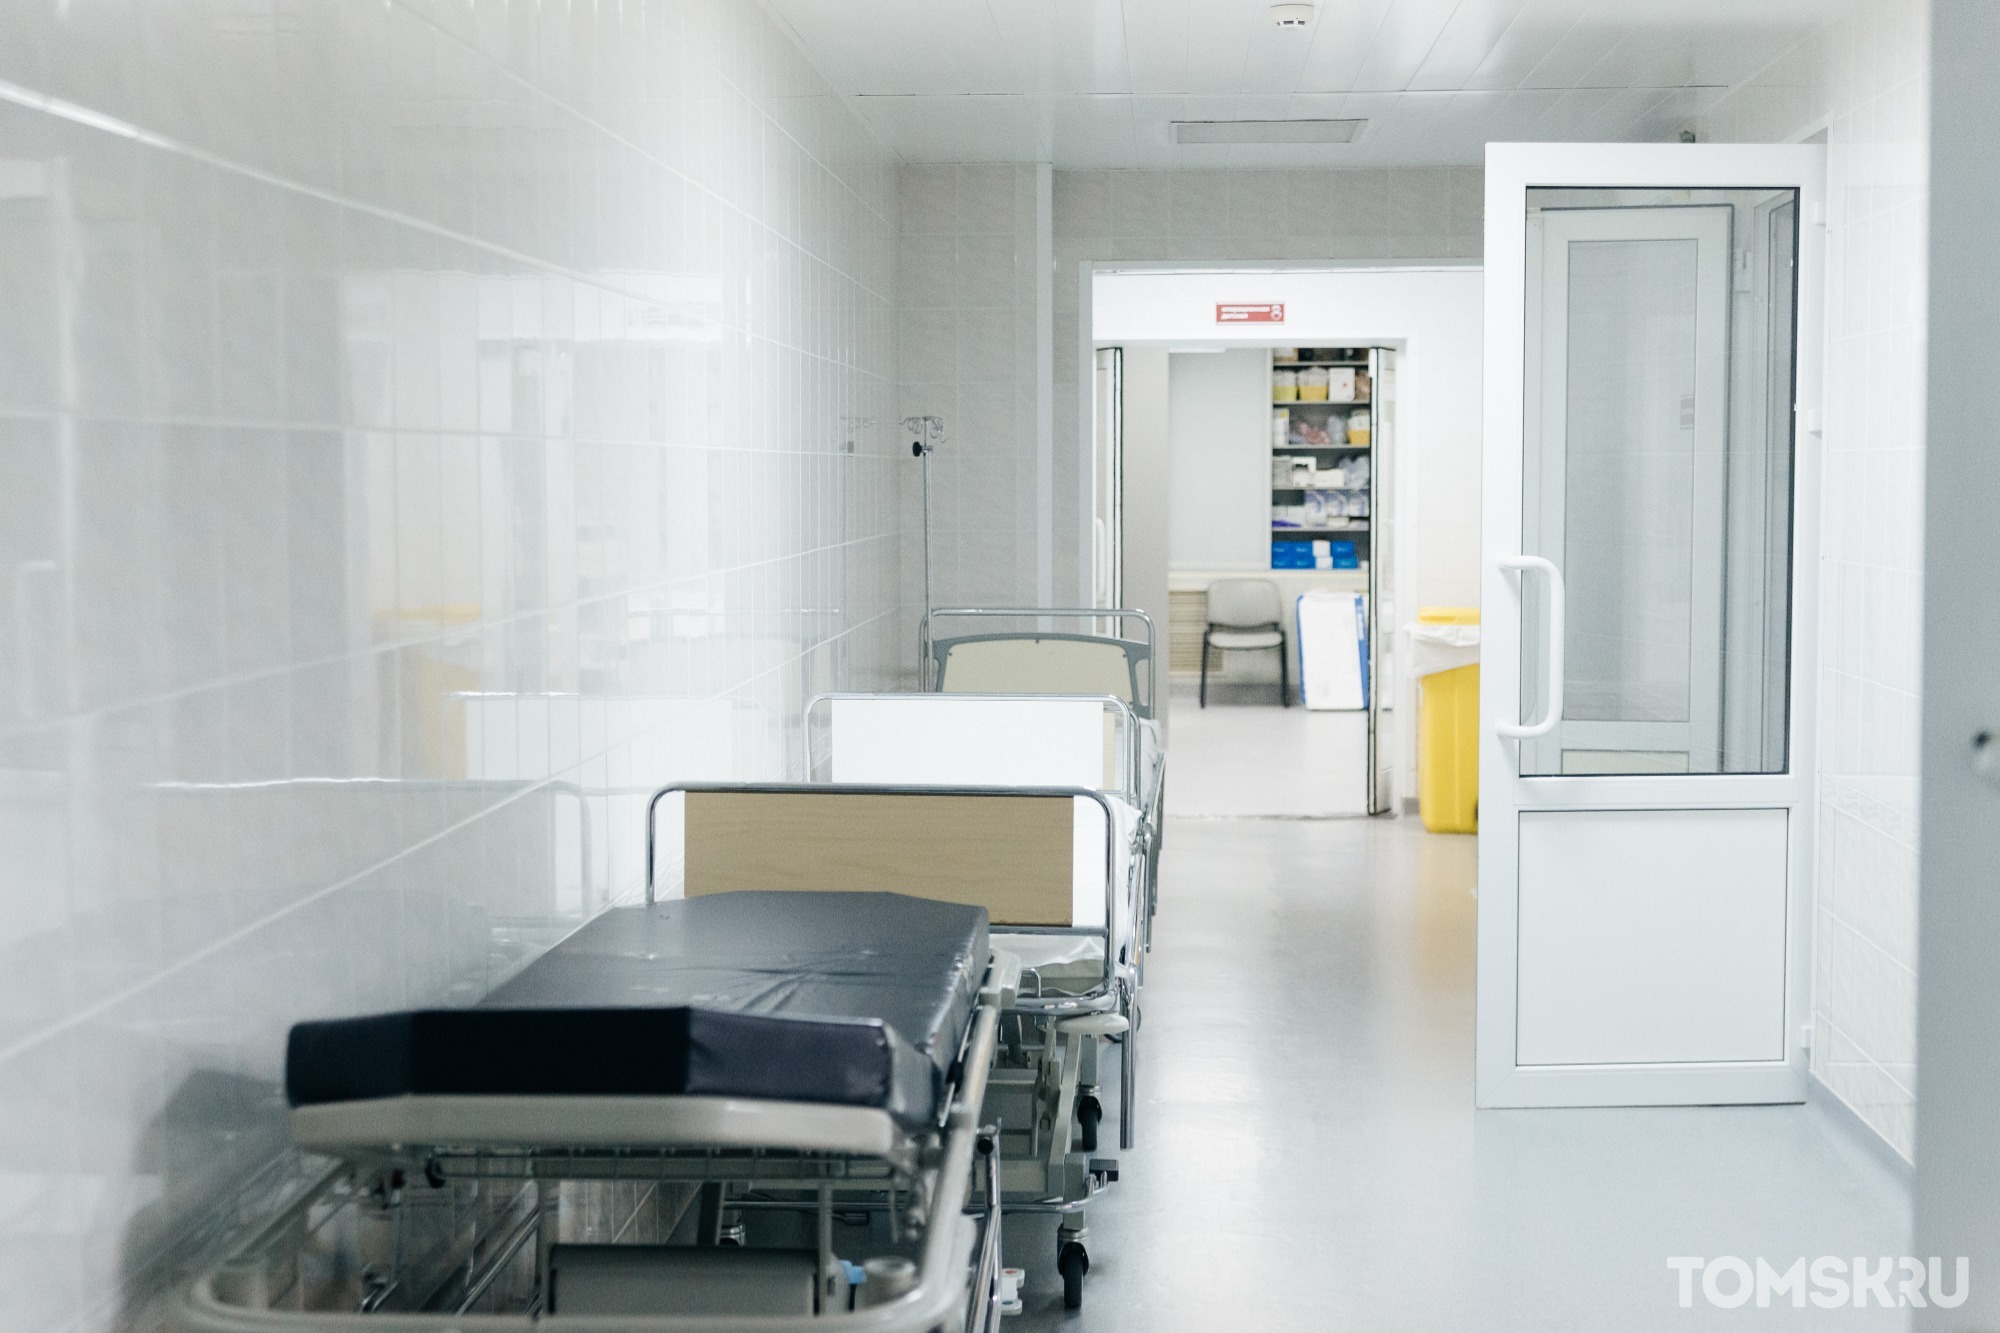 Томской области не требуется появление дополнительного коечного фонда в ковидных госпиталях